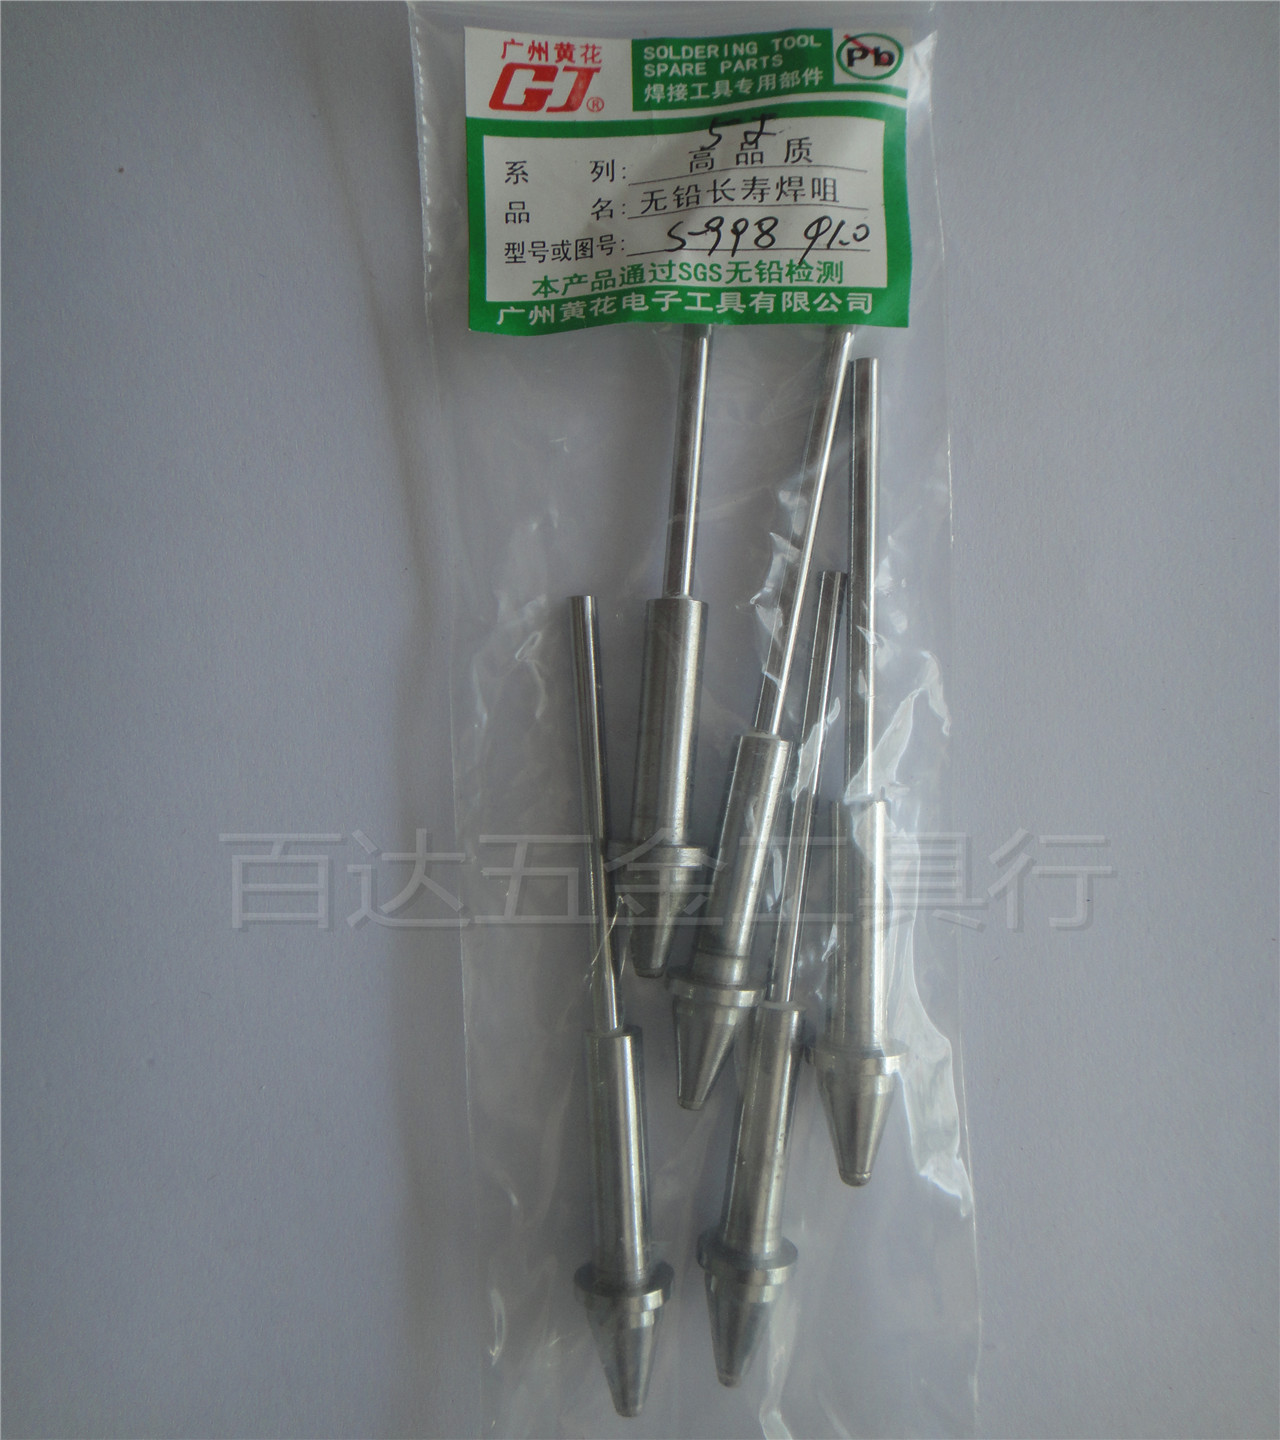 Original Guangzhou Yellow Flower S-997P S-998P Electric Tin Suction Gun Soldering Tin Suction Tin